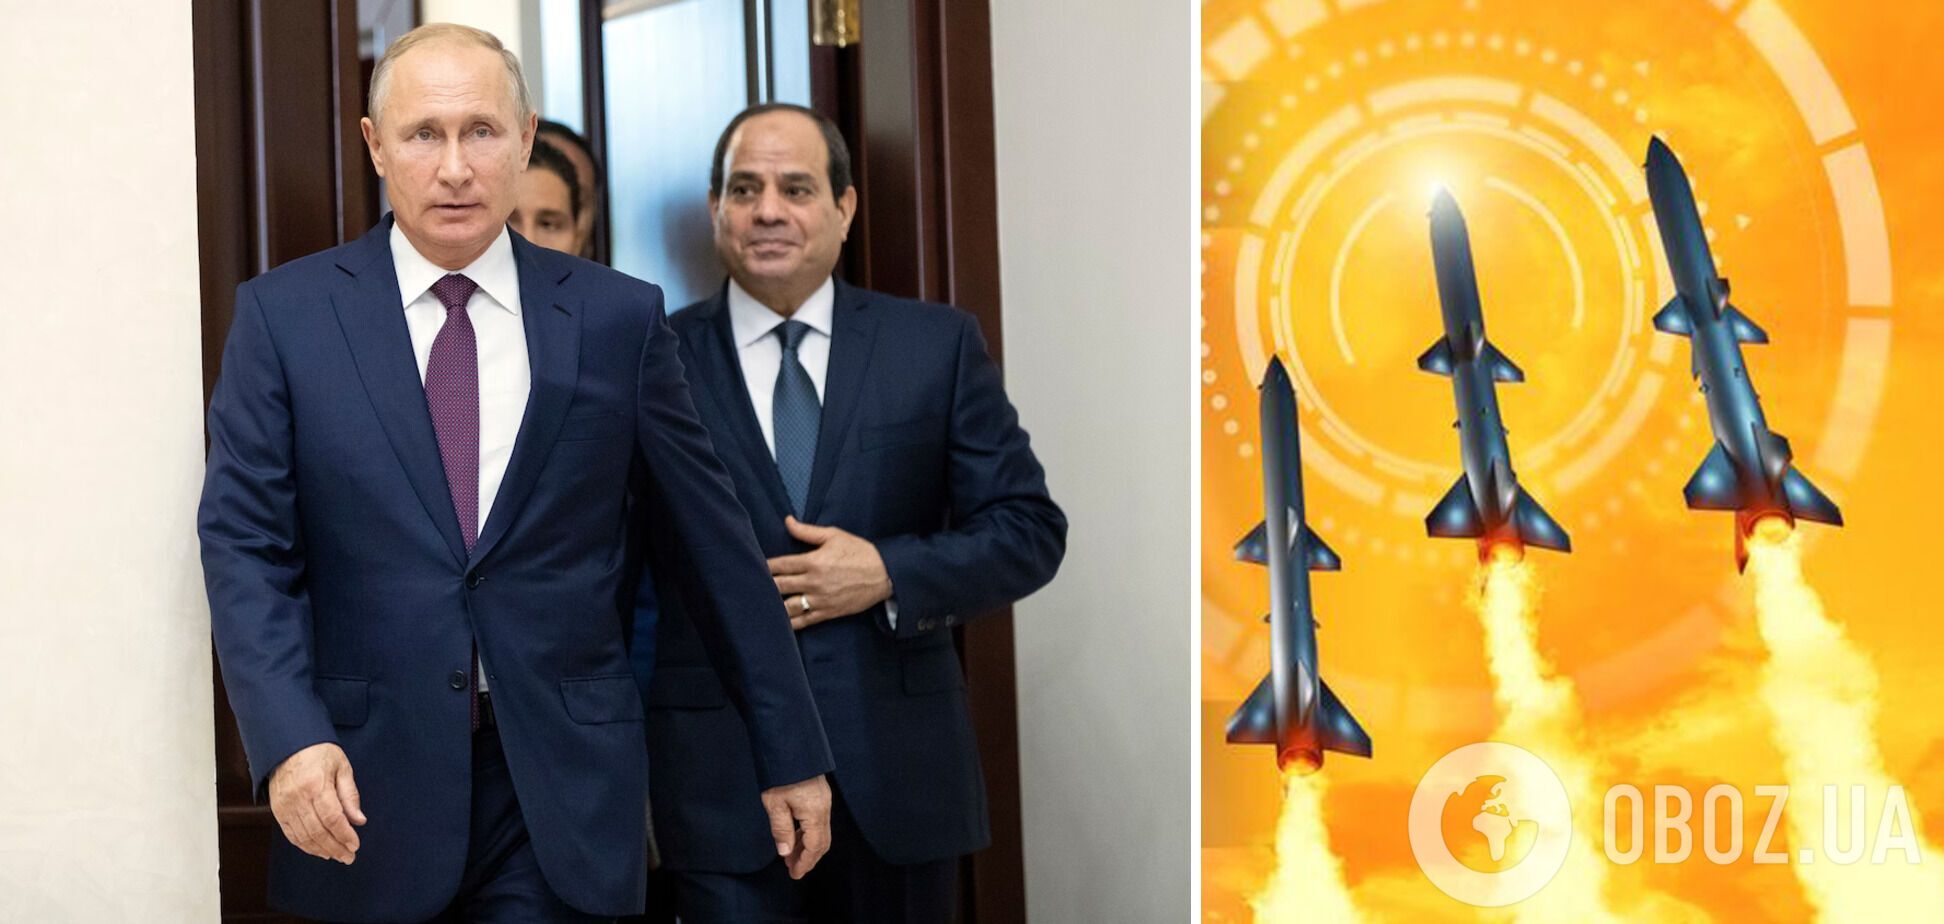 Єгипет планував надати Росії до 40 тис. ракет: витік секретних документів розкрив гучну схему – WP